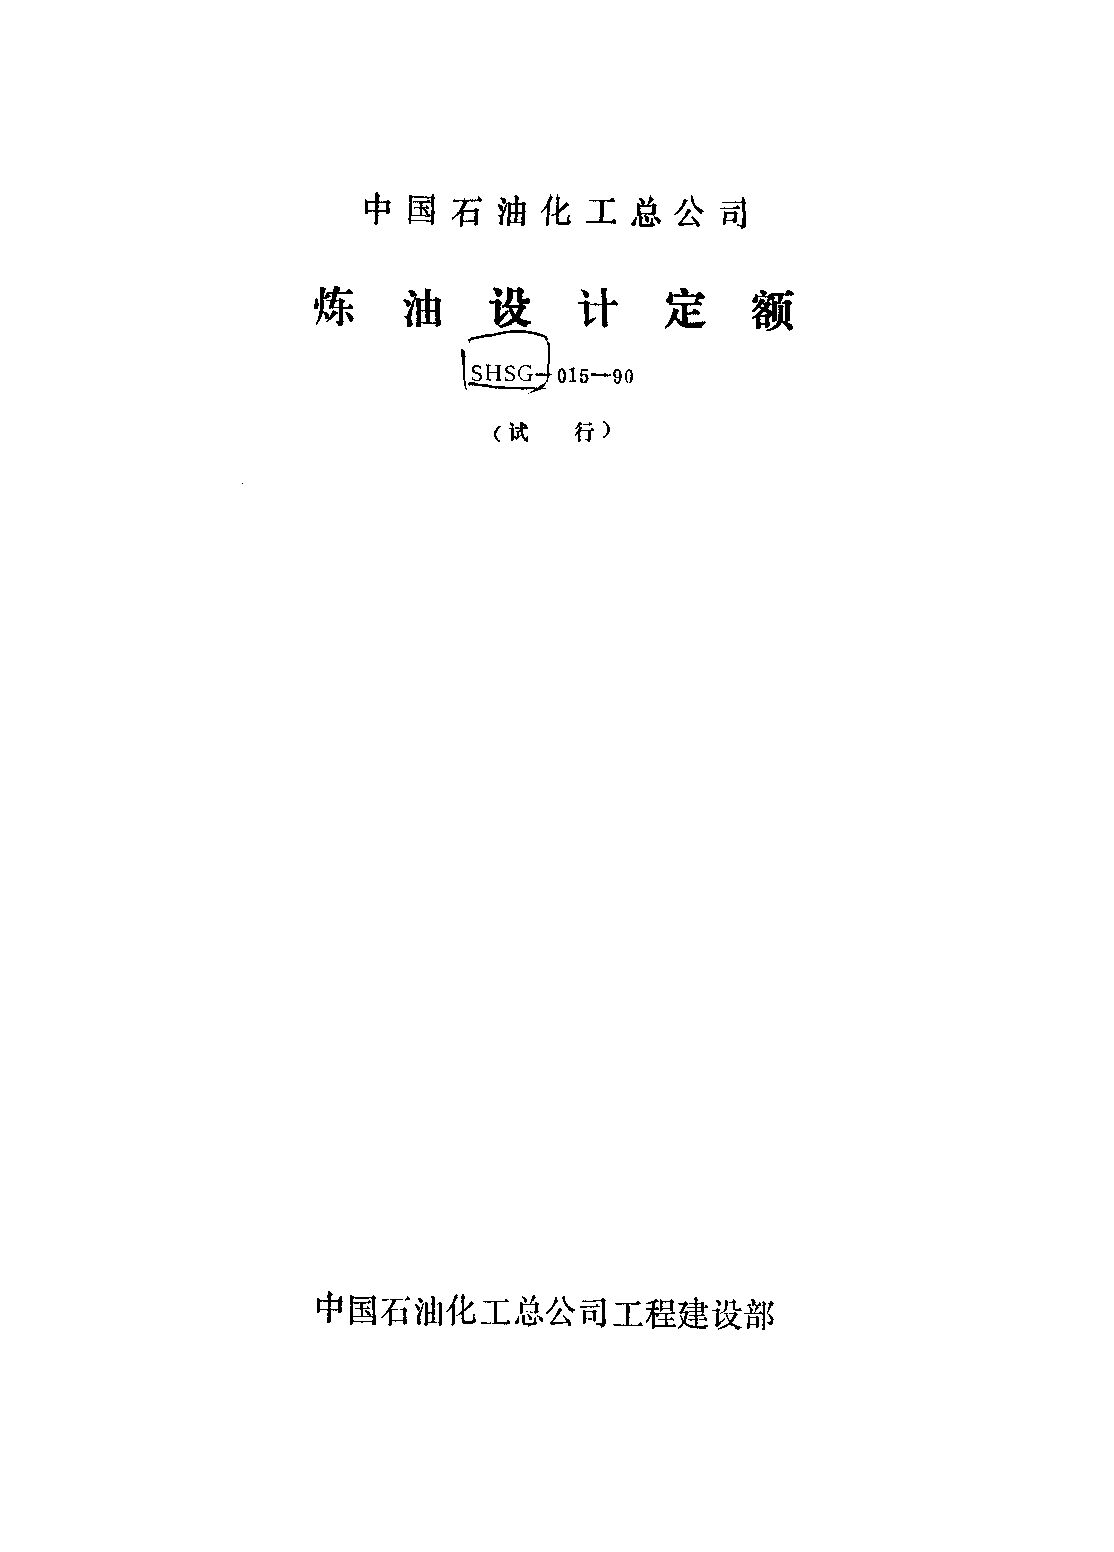 SHSG-015-1990封面图